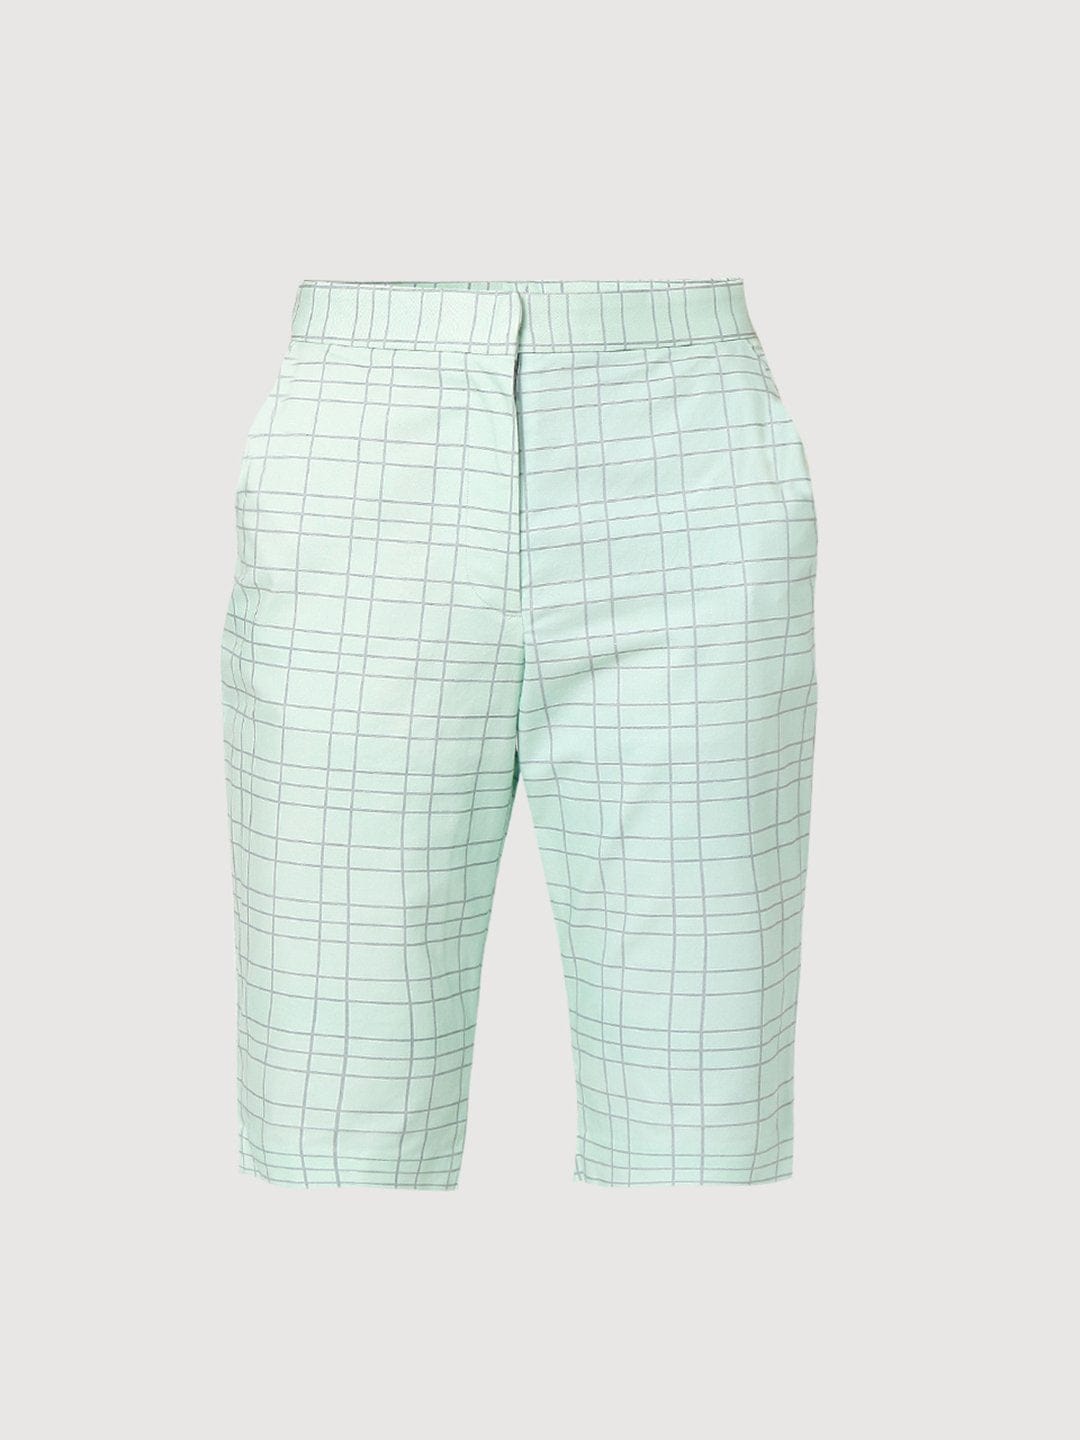 Green checkered long shorts